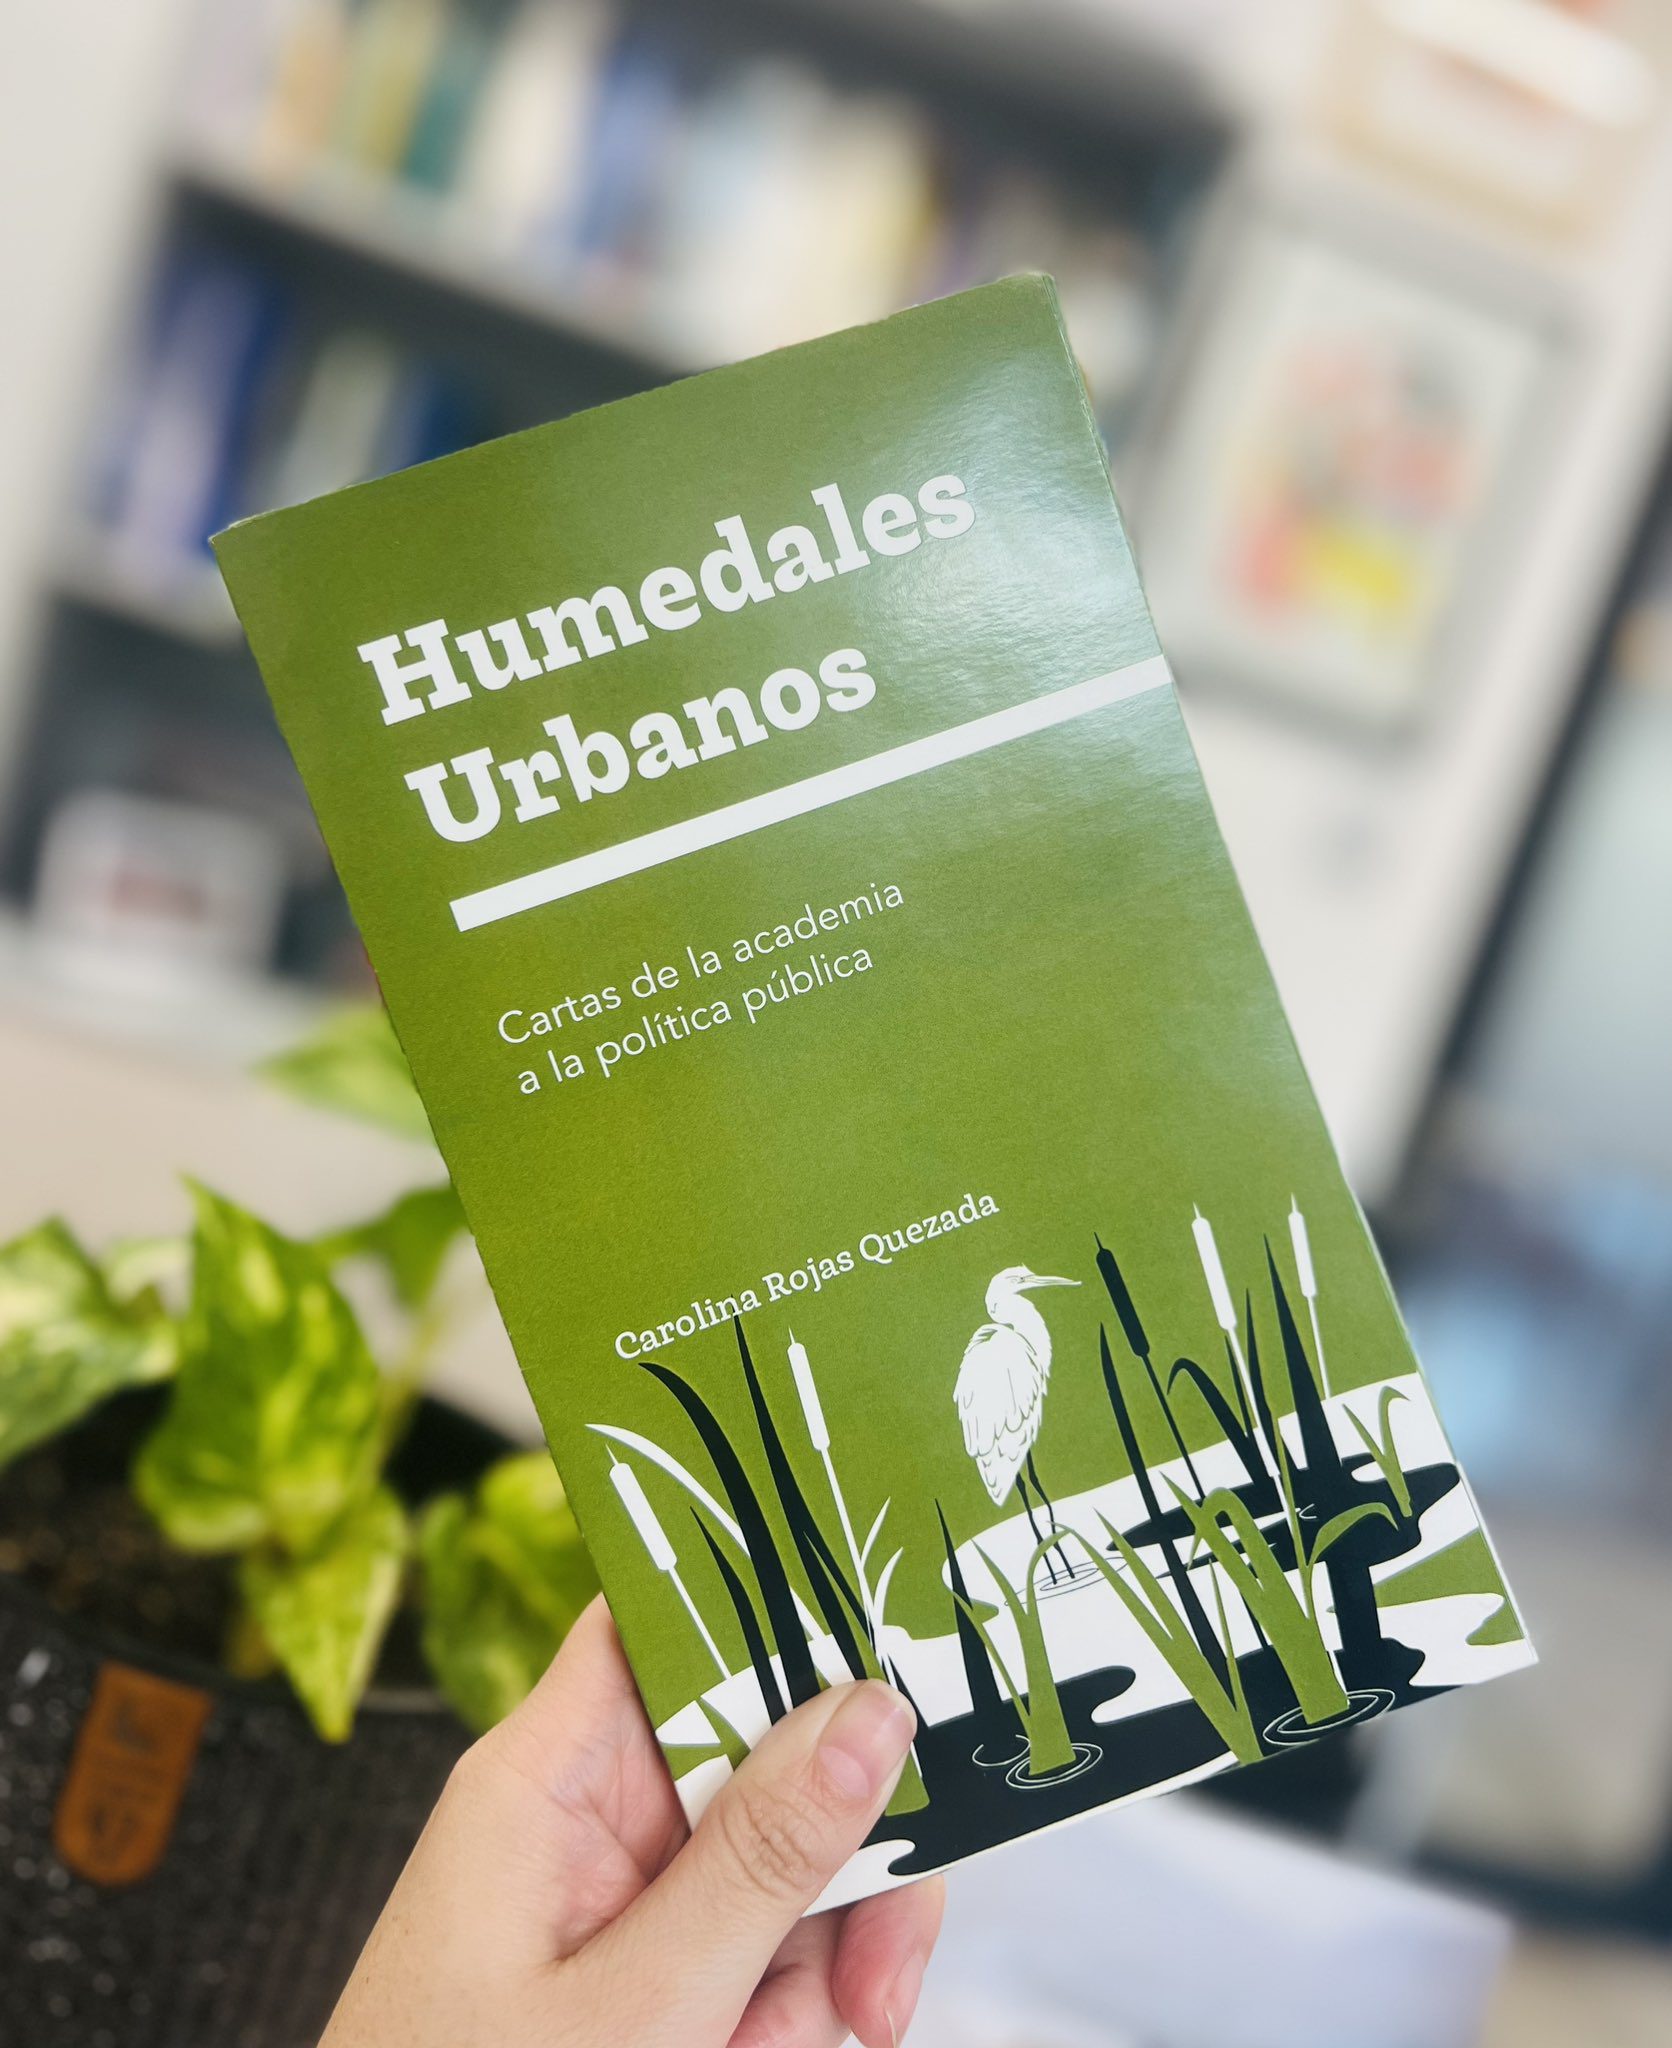 Profesora Carolina Rojas lanza libro «Humedales Urbanos: cartas de la academia a la política pública»